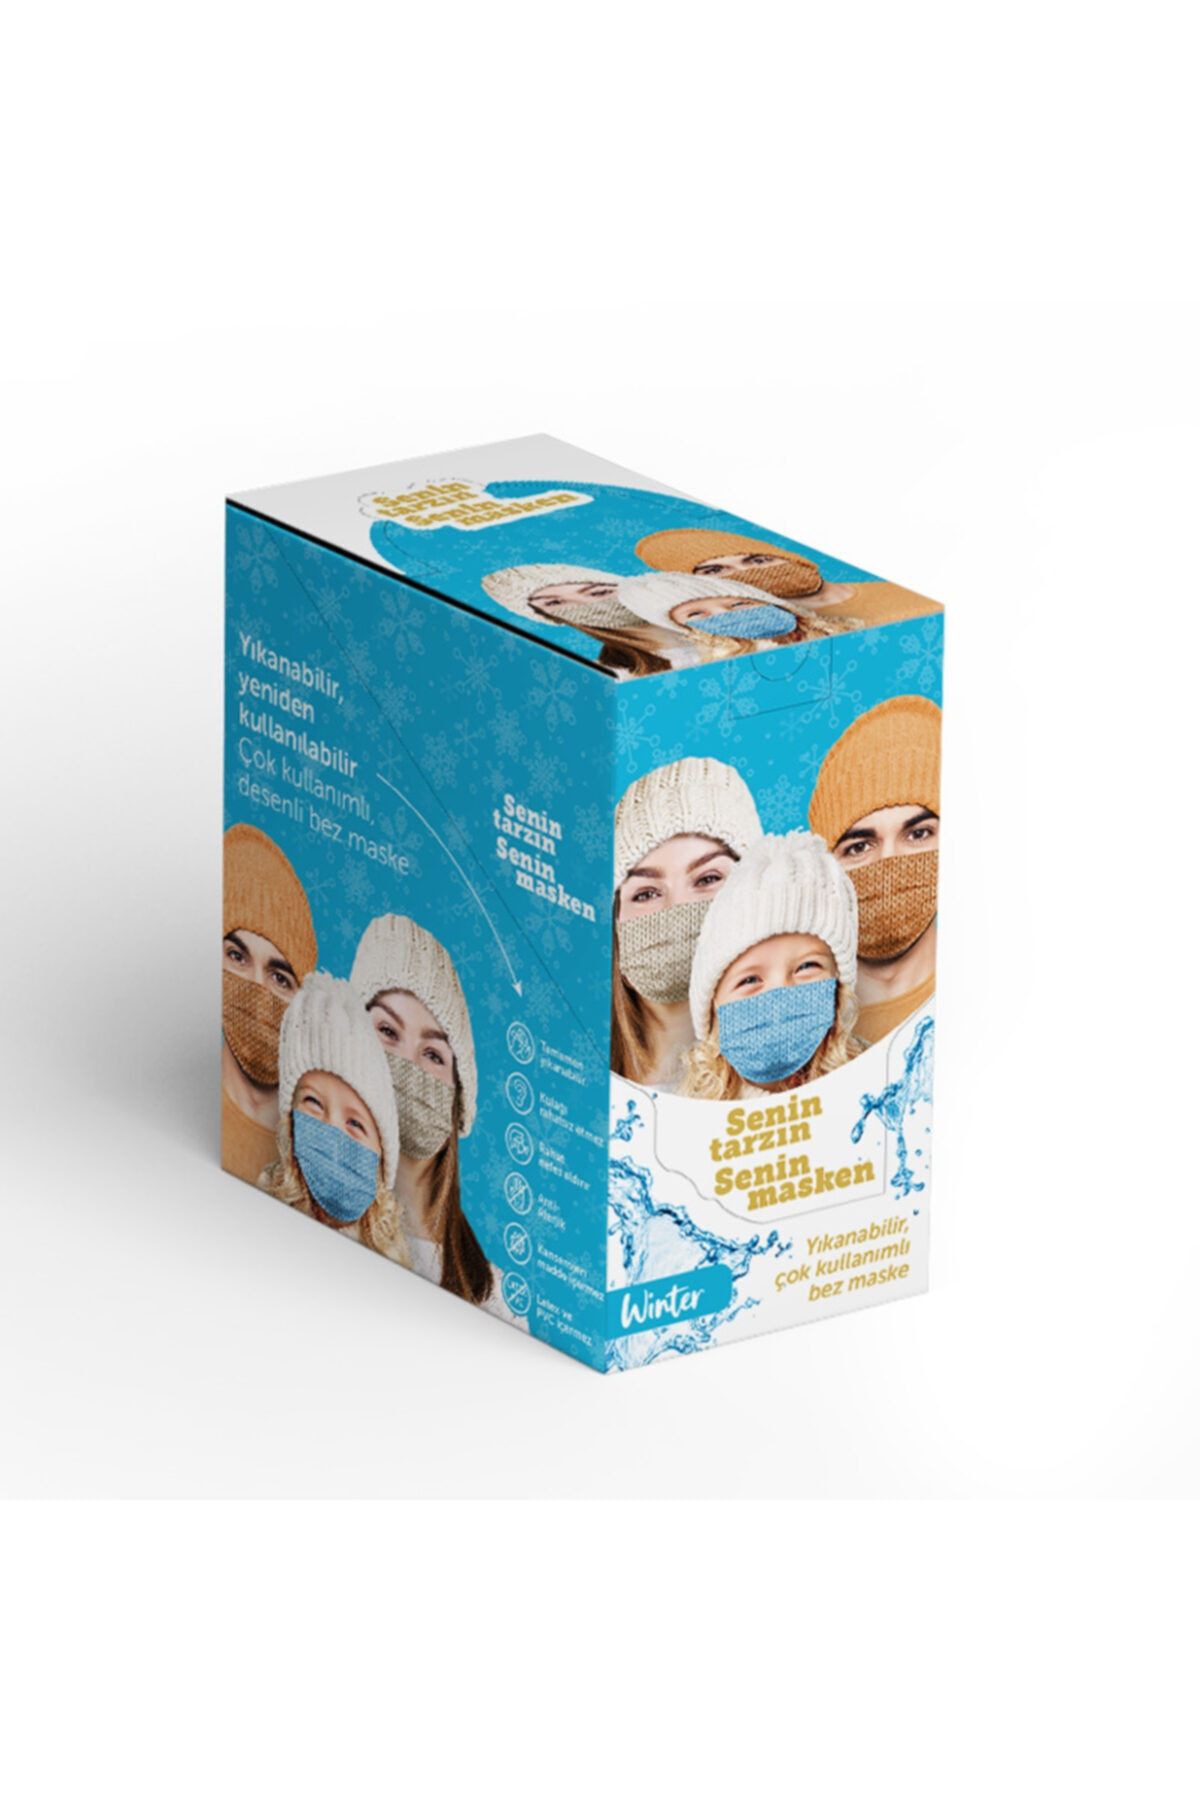 Puumask (Winter Model) Kutuda 40 Adet Desenli Yıkanabilir Yeni Nesil Kumaş Telli Bez Maske